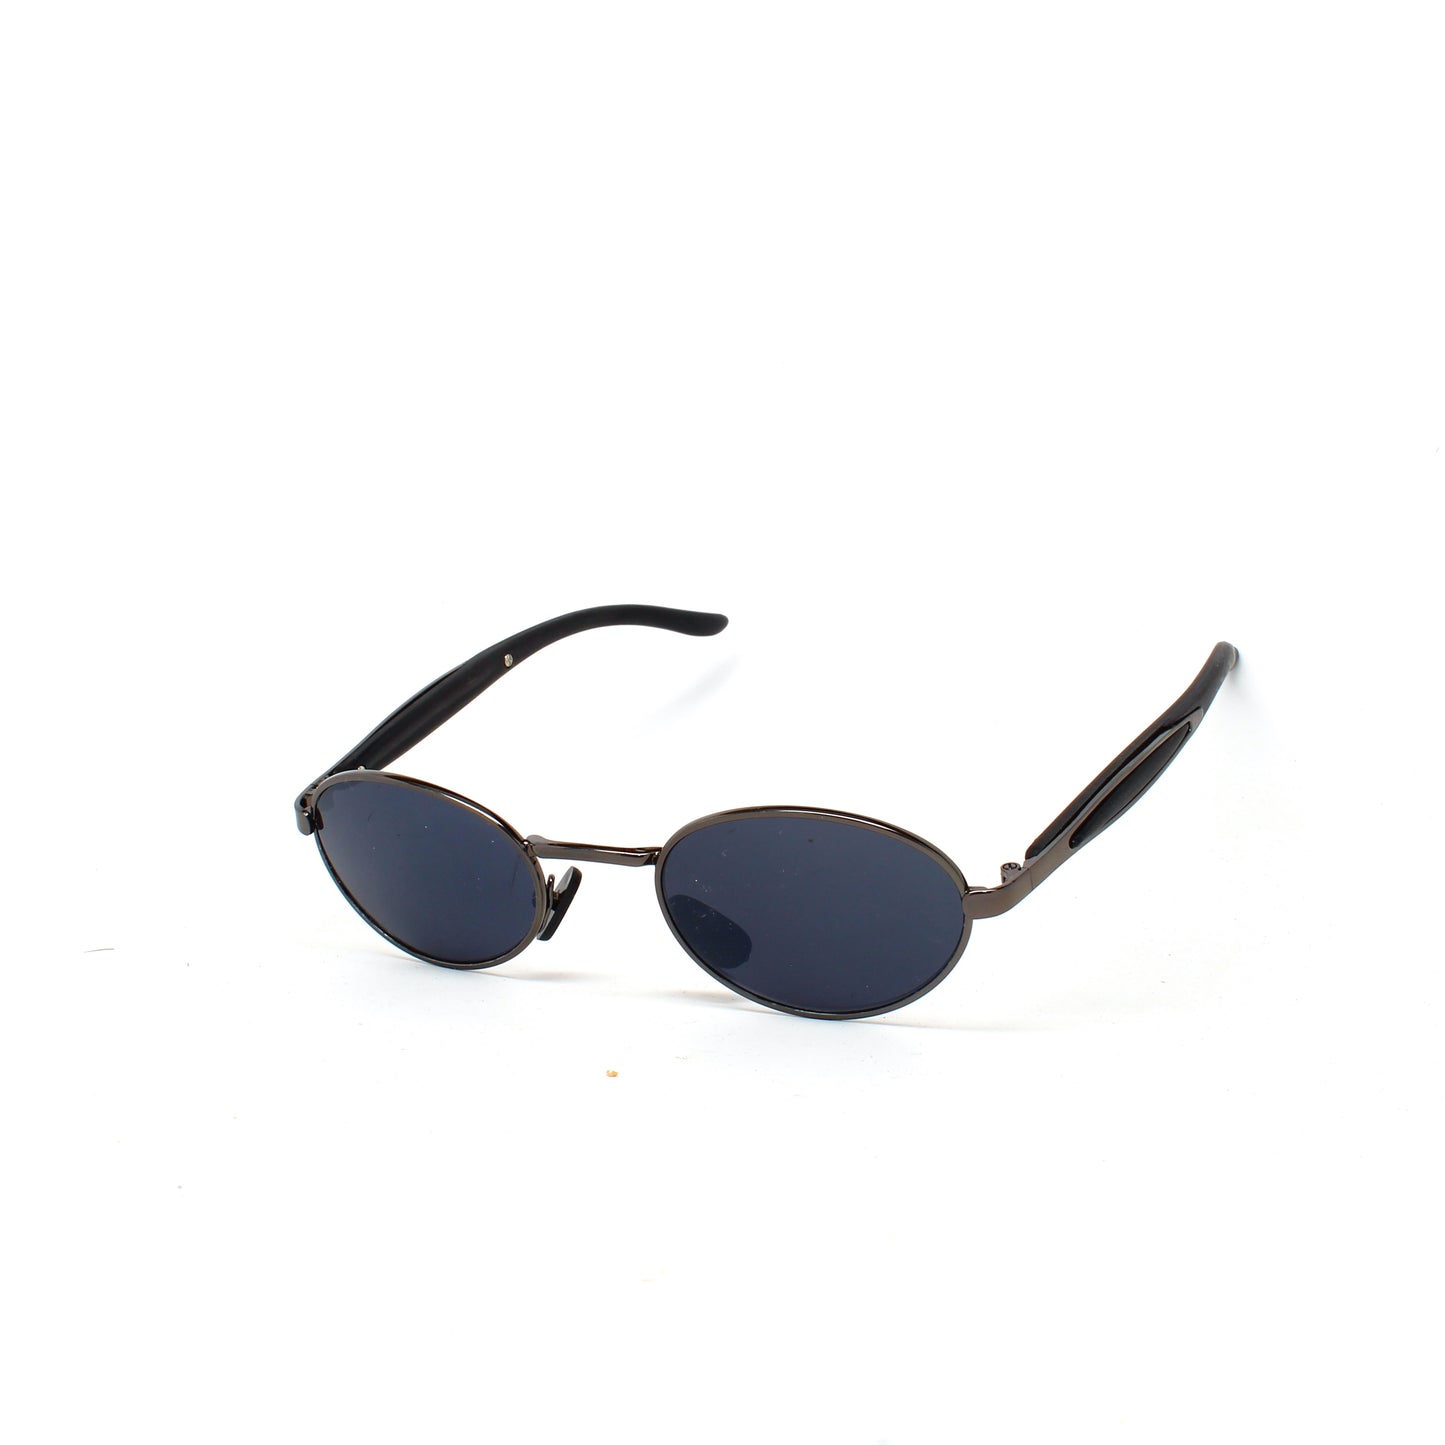 Small Size Mini 90s Deadstock Wraparound Santa Fe Oval Sunglasses - Dark